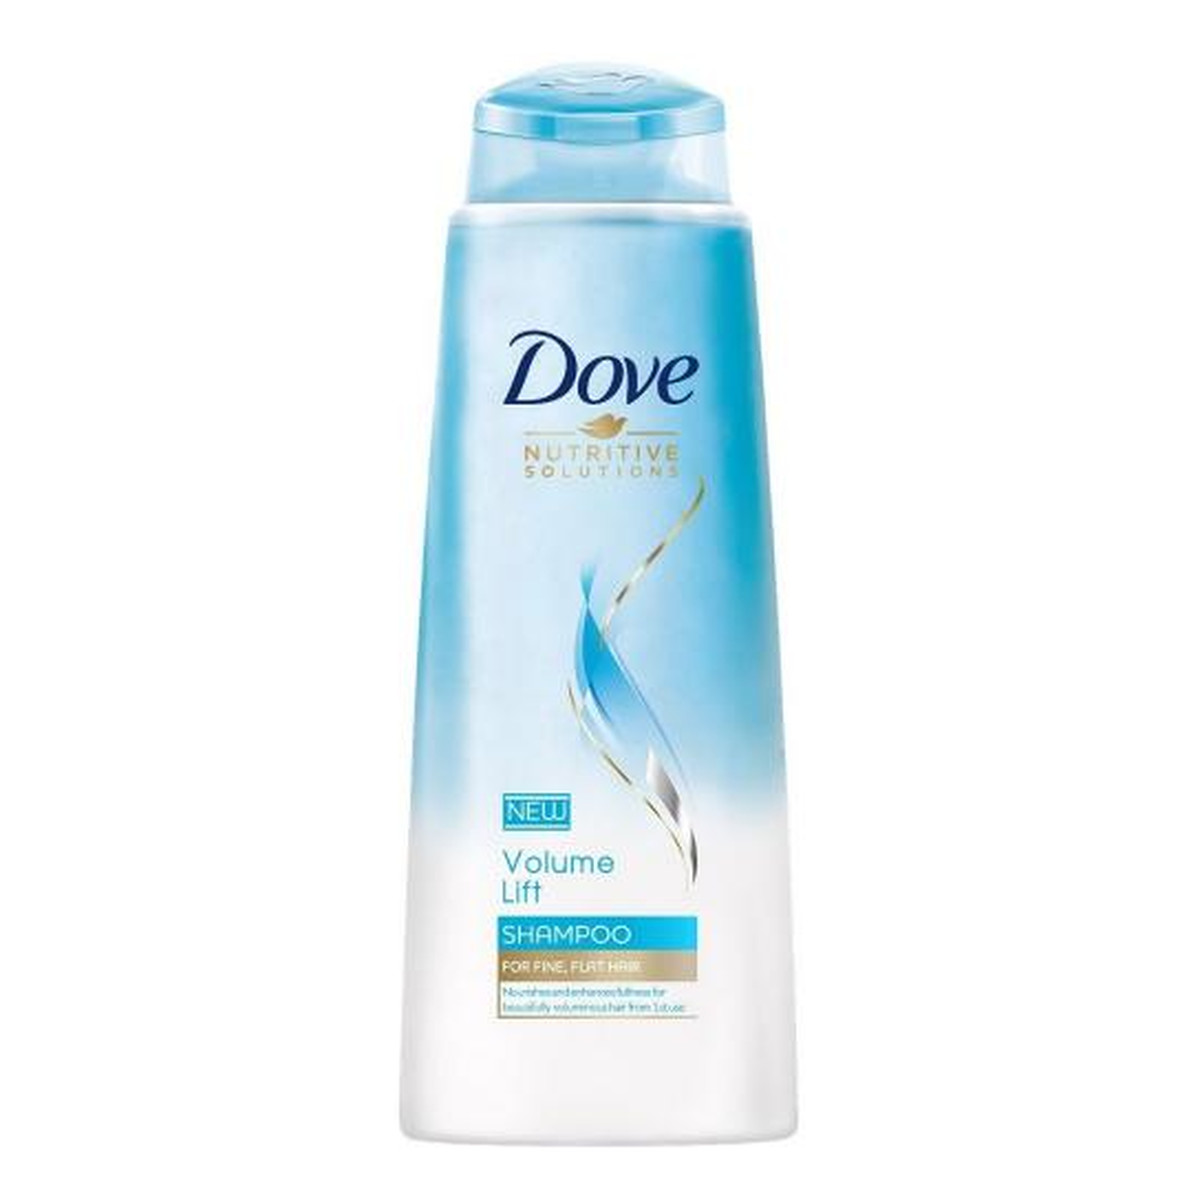 Dove Nutritive Solutions Volume Lift szampon DODAJĄCY OBJĘTOŚCI WŁOSOM 250ml